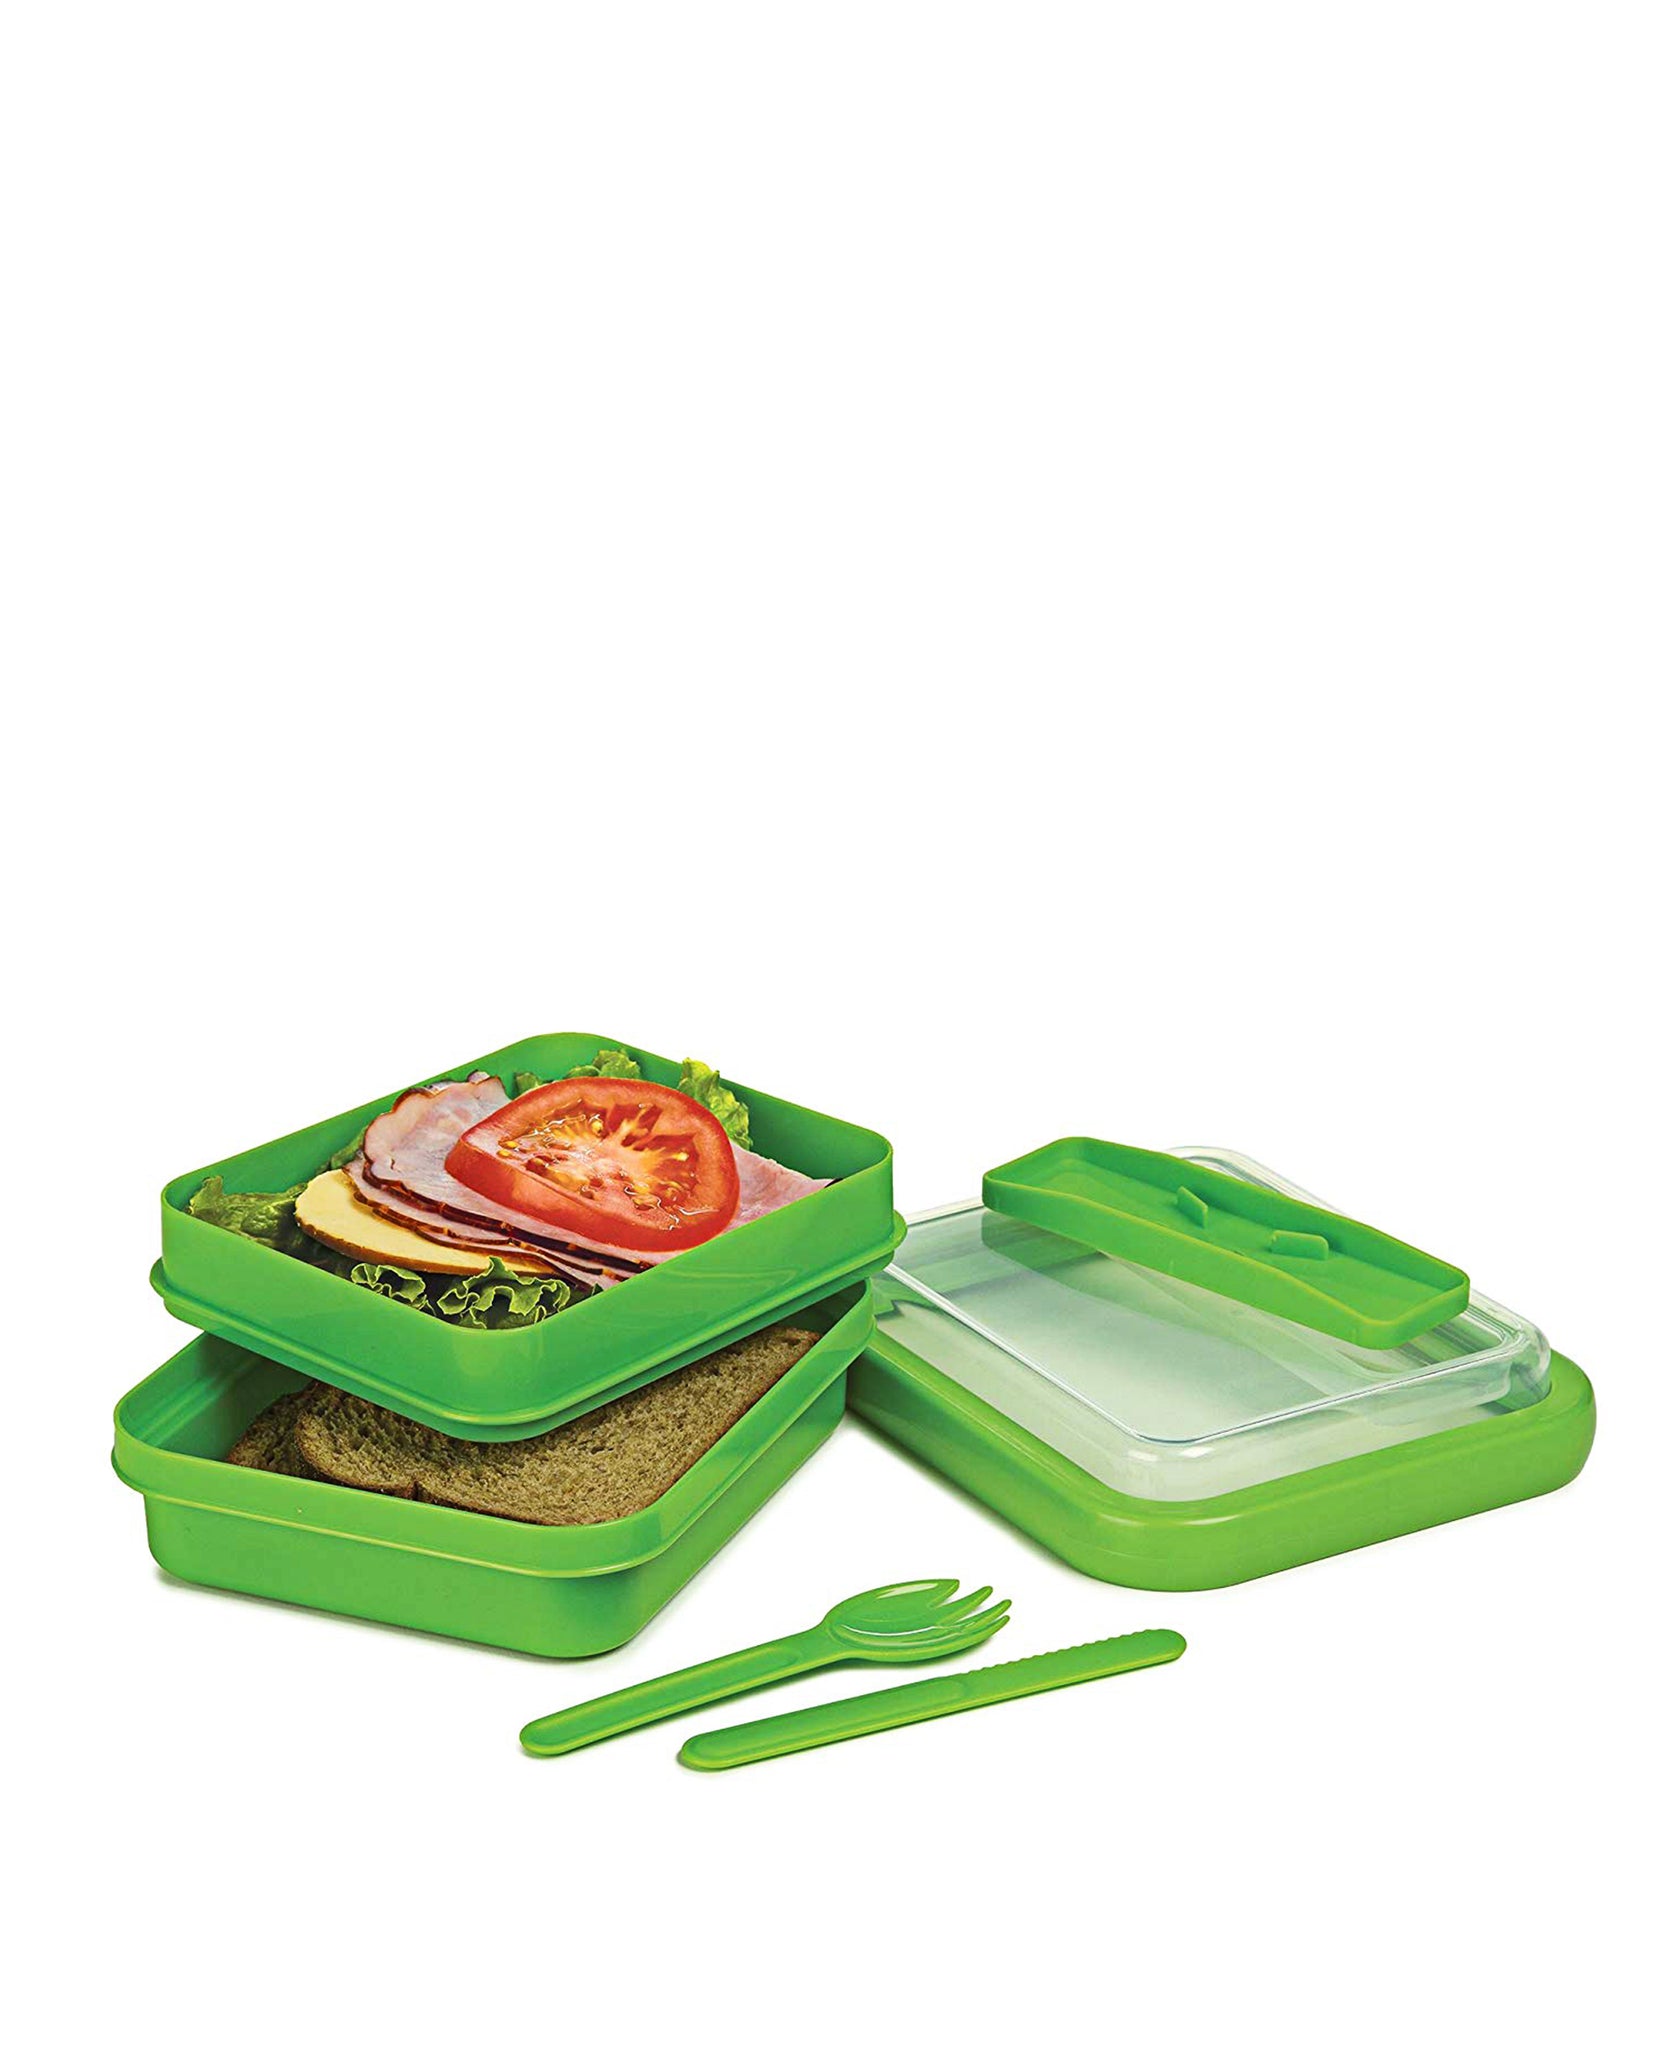 Progressive On The Go Lunch Box - Green